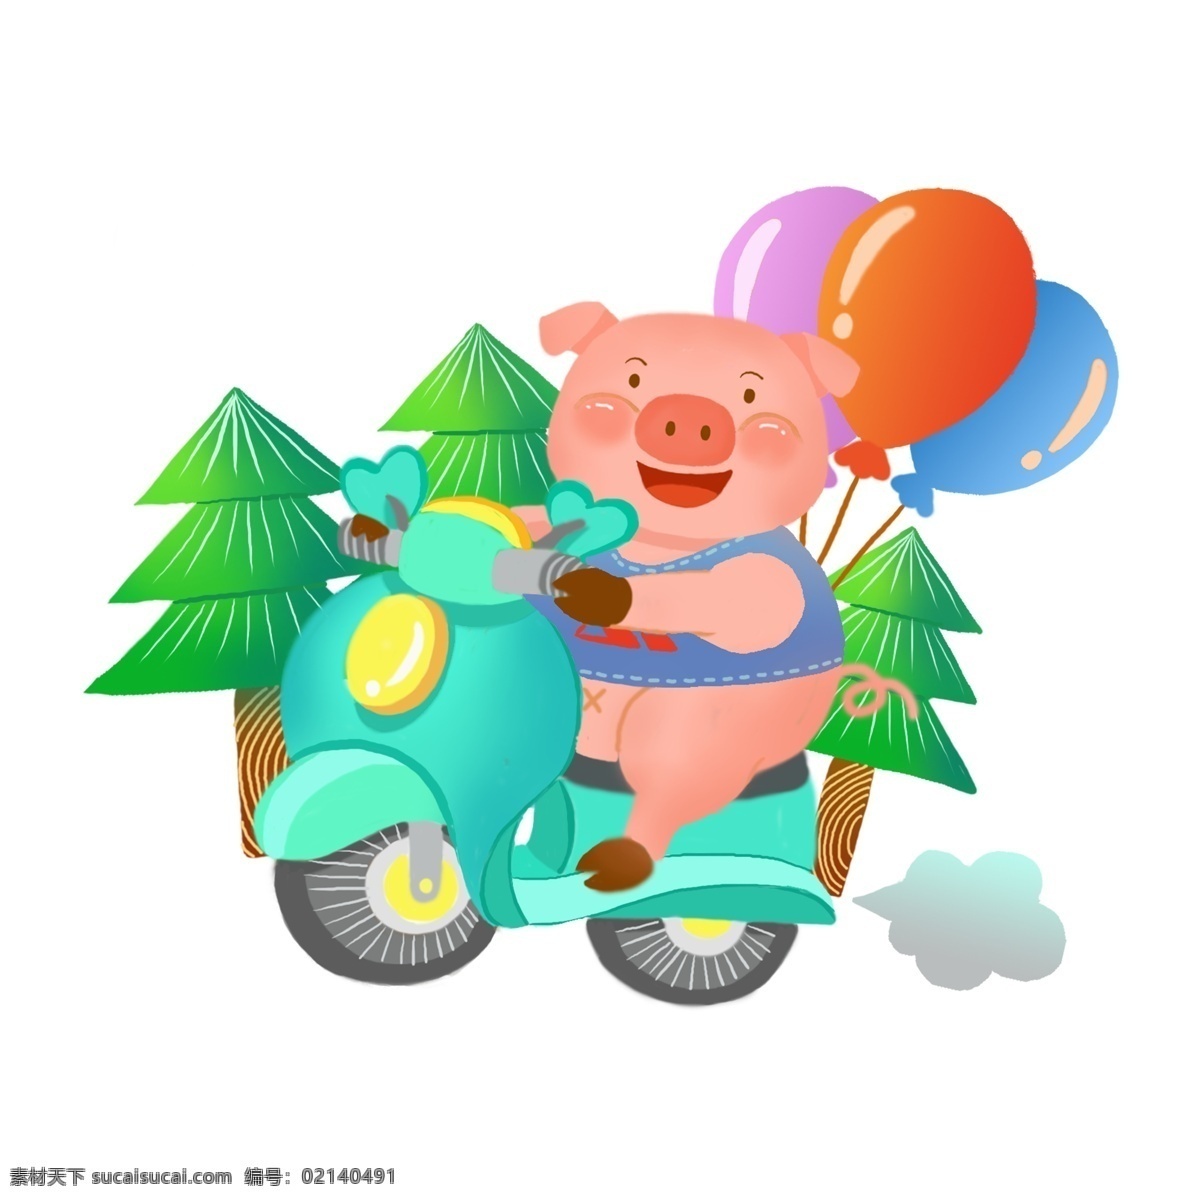 手绘 可爱 生肖 猪 系列 精品 元素 之一 生肖猪 气球 创意 电驴